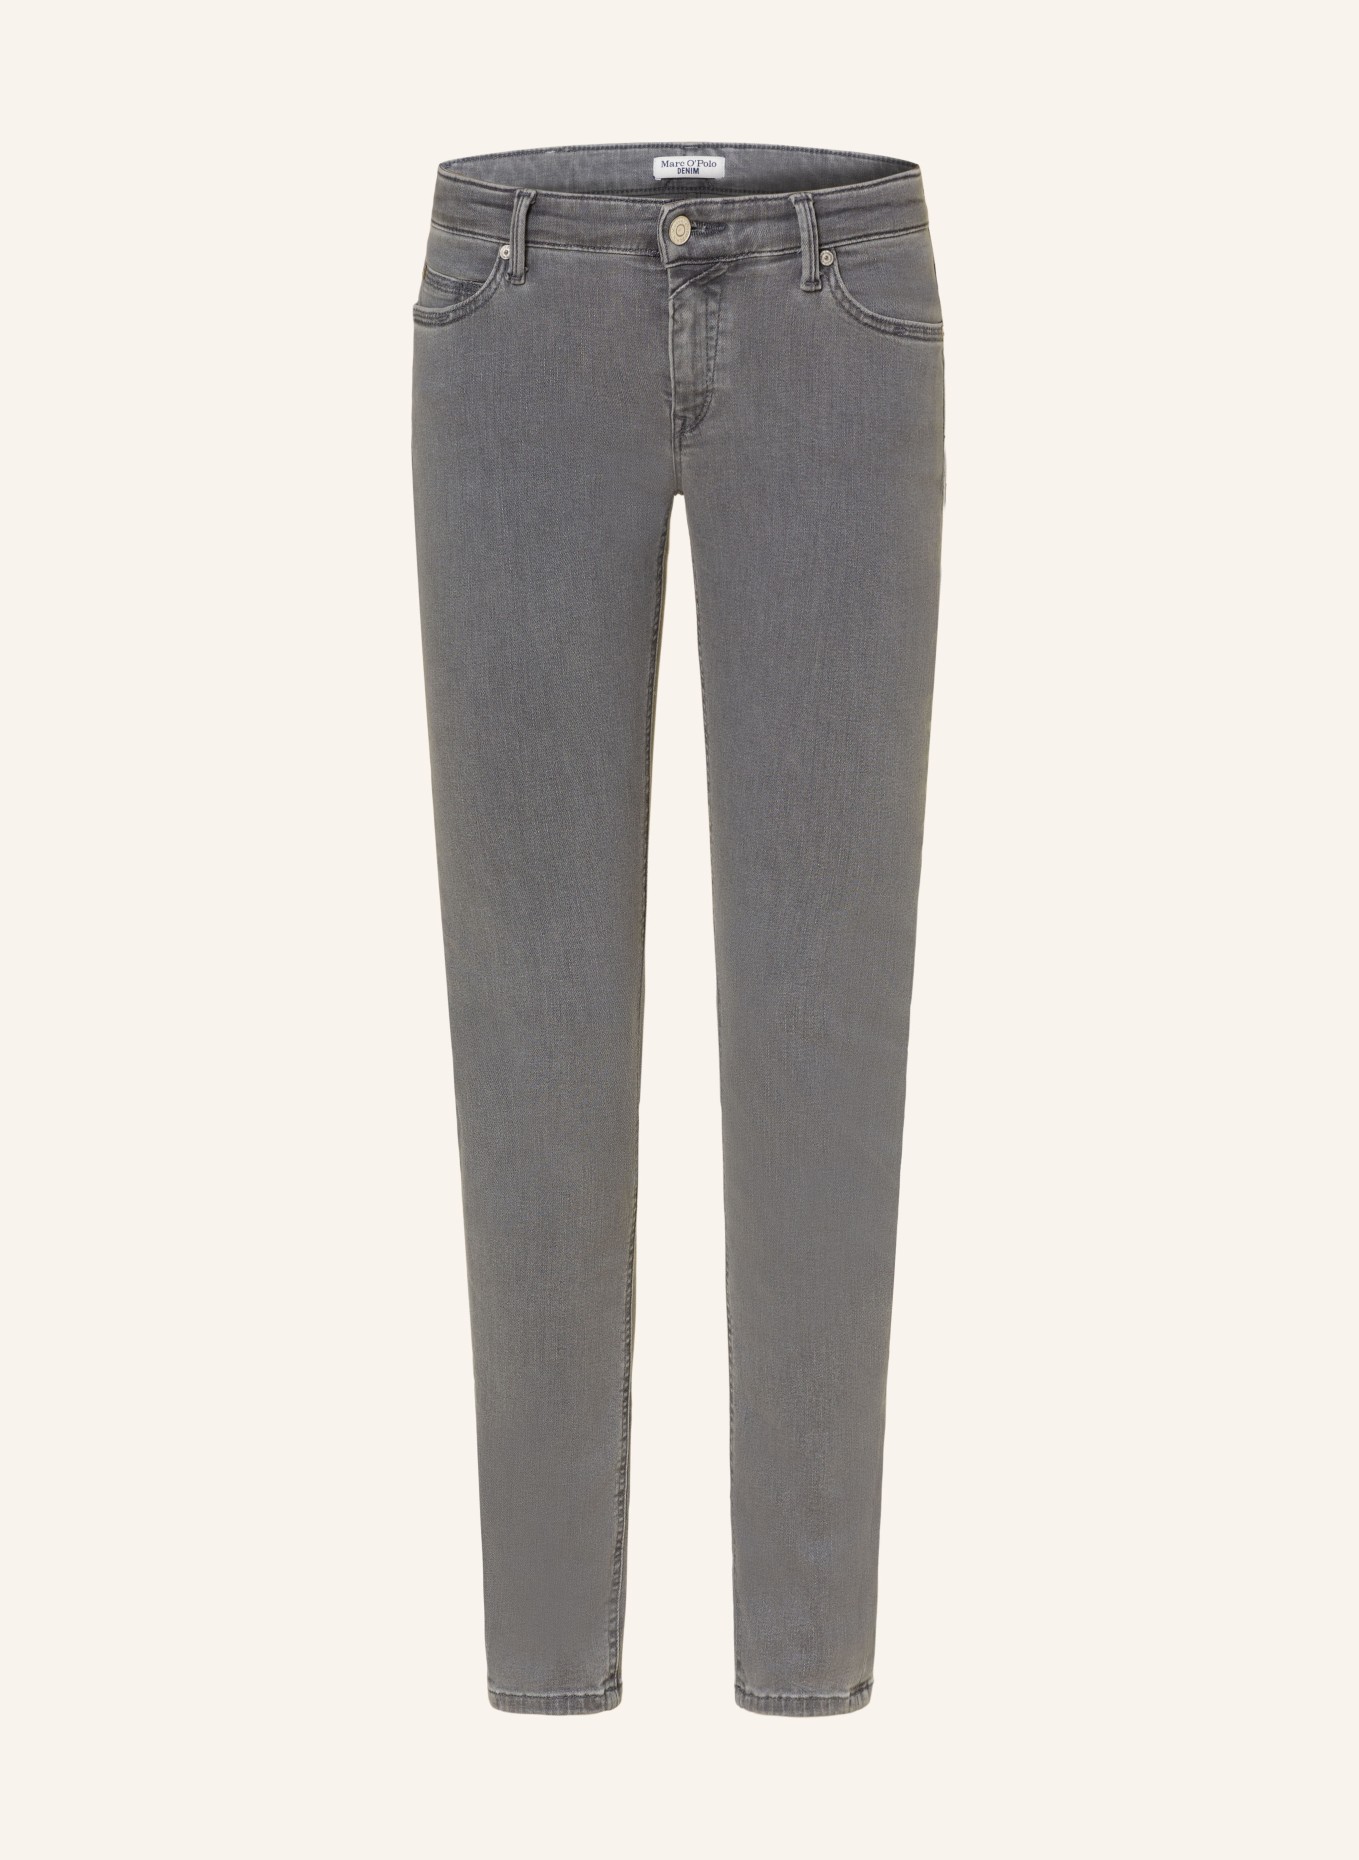 Marc O'Polo DENIM Skinny Jeans, Farbe: P68 multi/vintage mid grey (Bild 1)